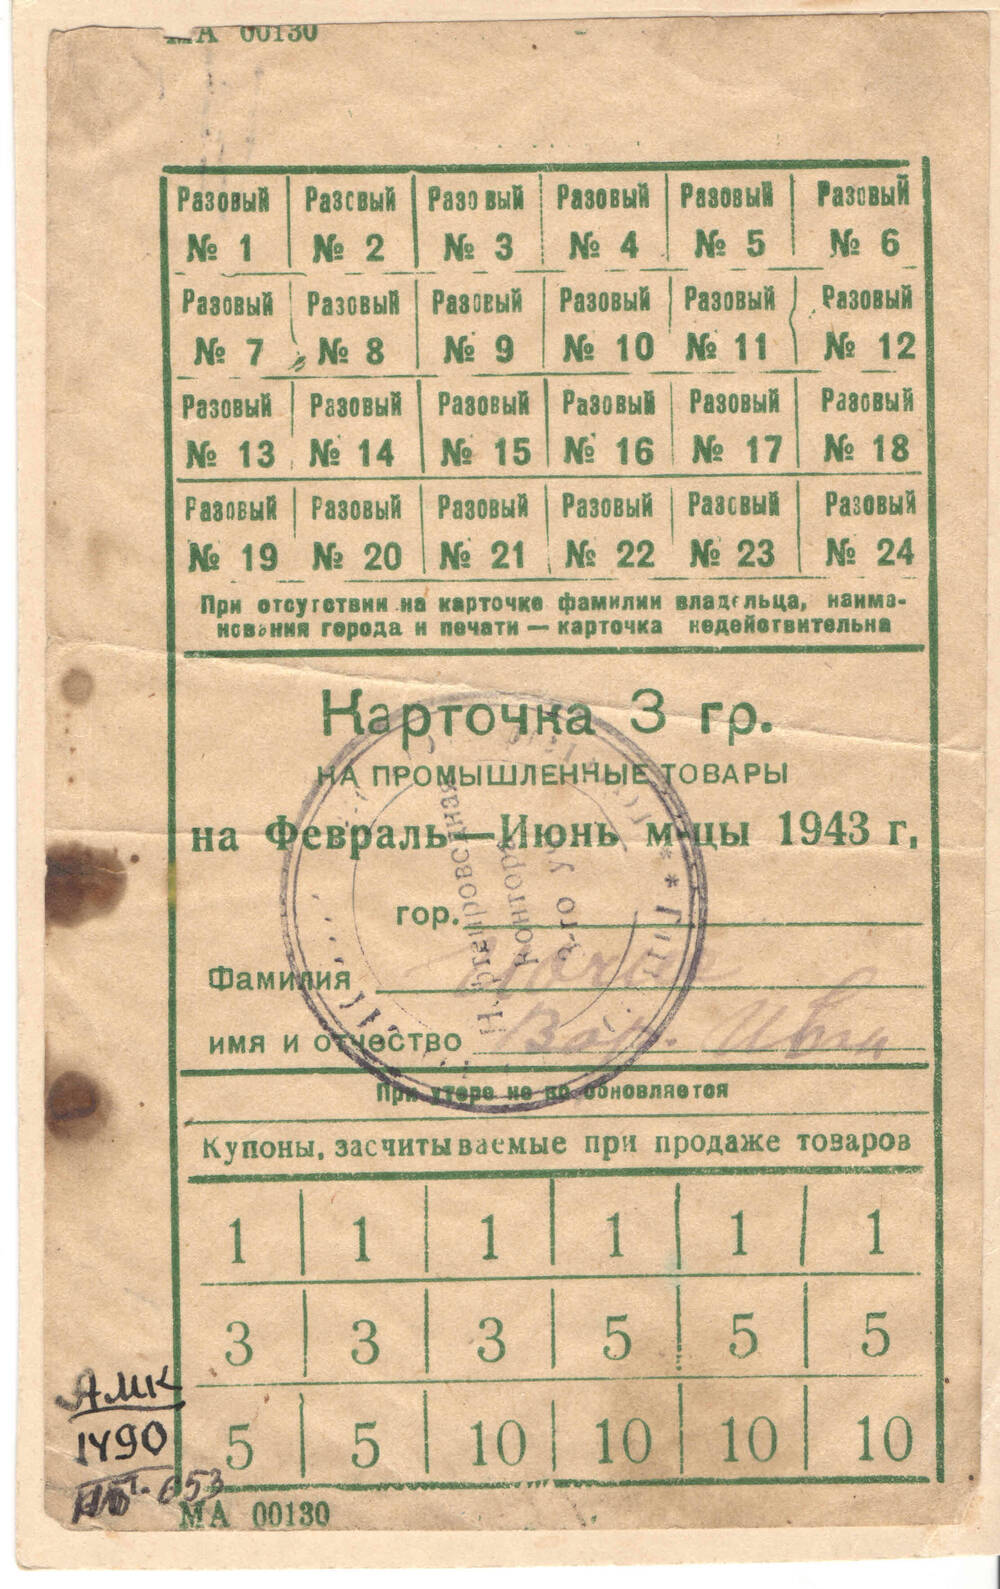 Карточка промтоварная 3гр. на февраль-июнь м-цы 1943г.Передал Захариев В.